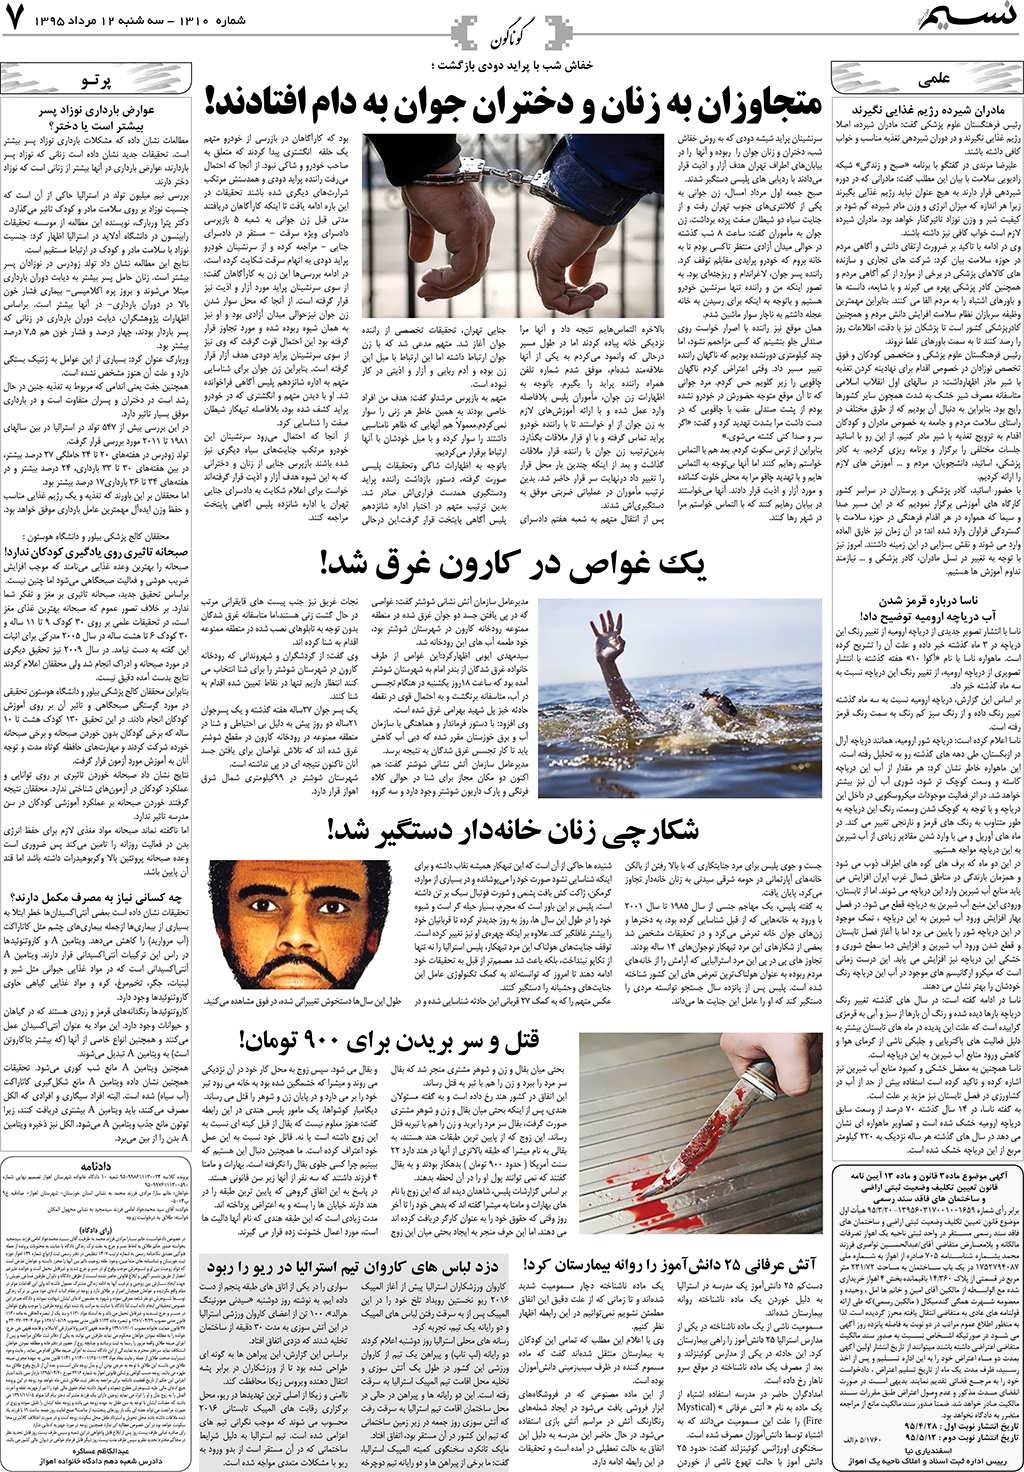 صفحه گوناگون روزنامه نسیم شماره 1310